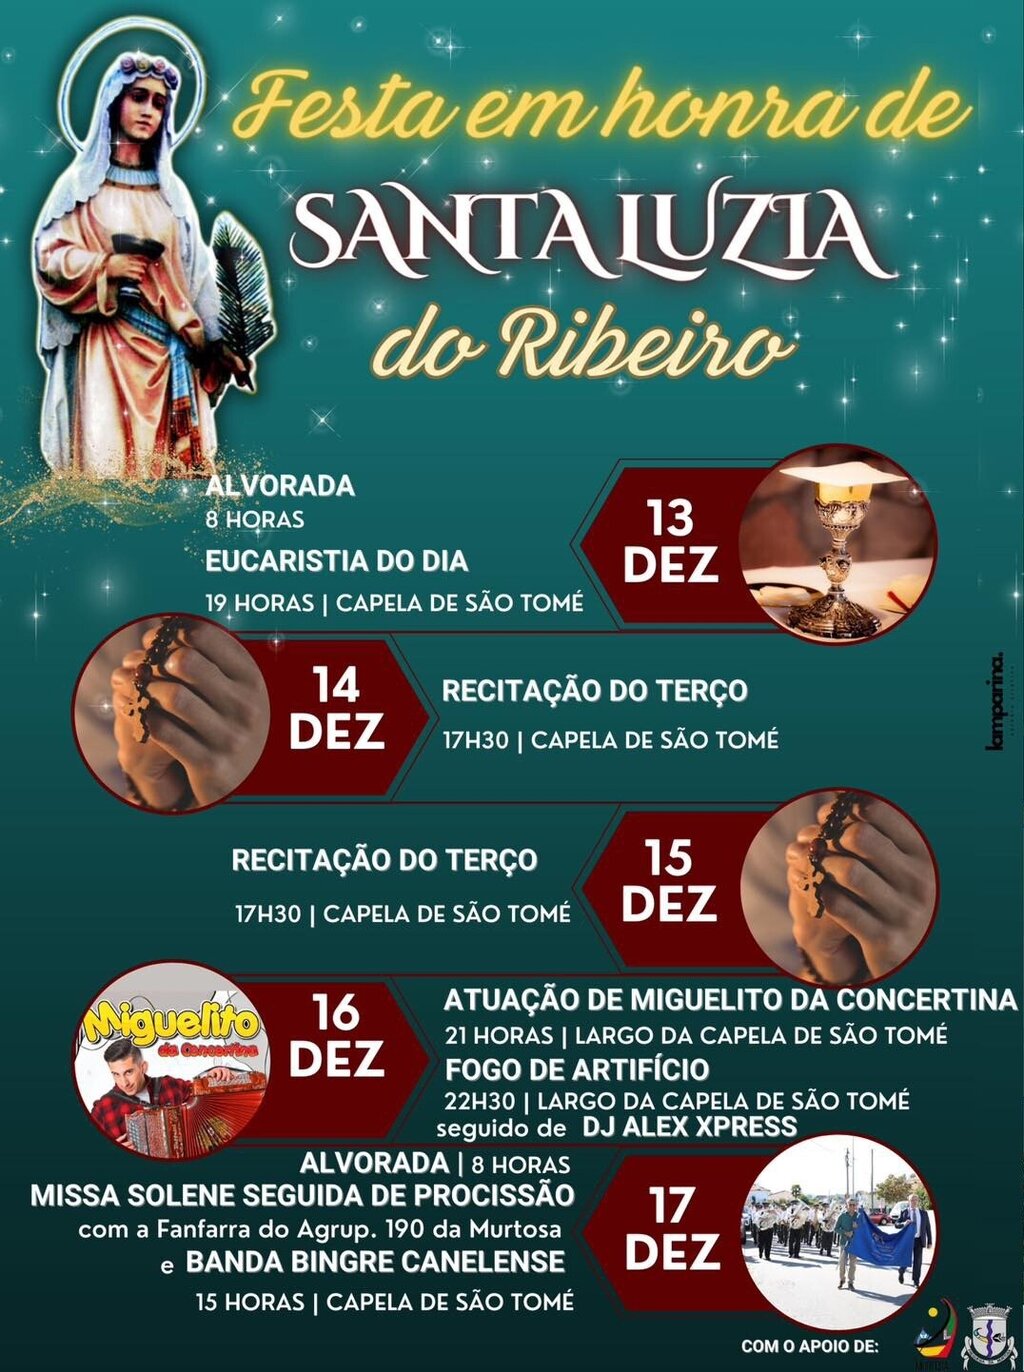 Festa de Santa Luzia - Ribeiro